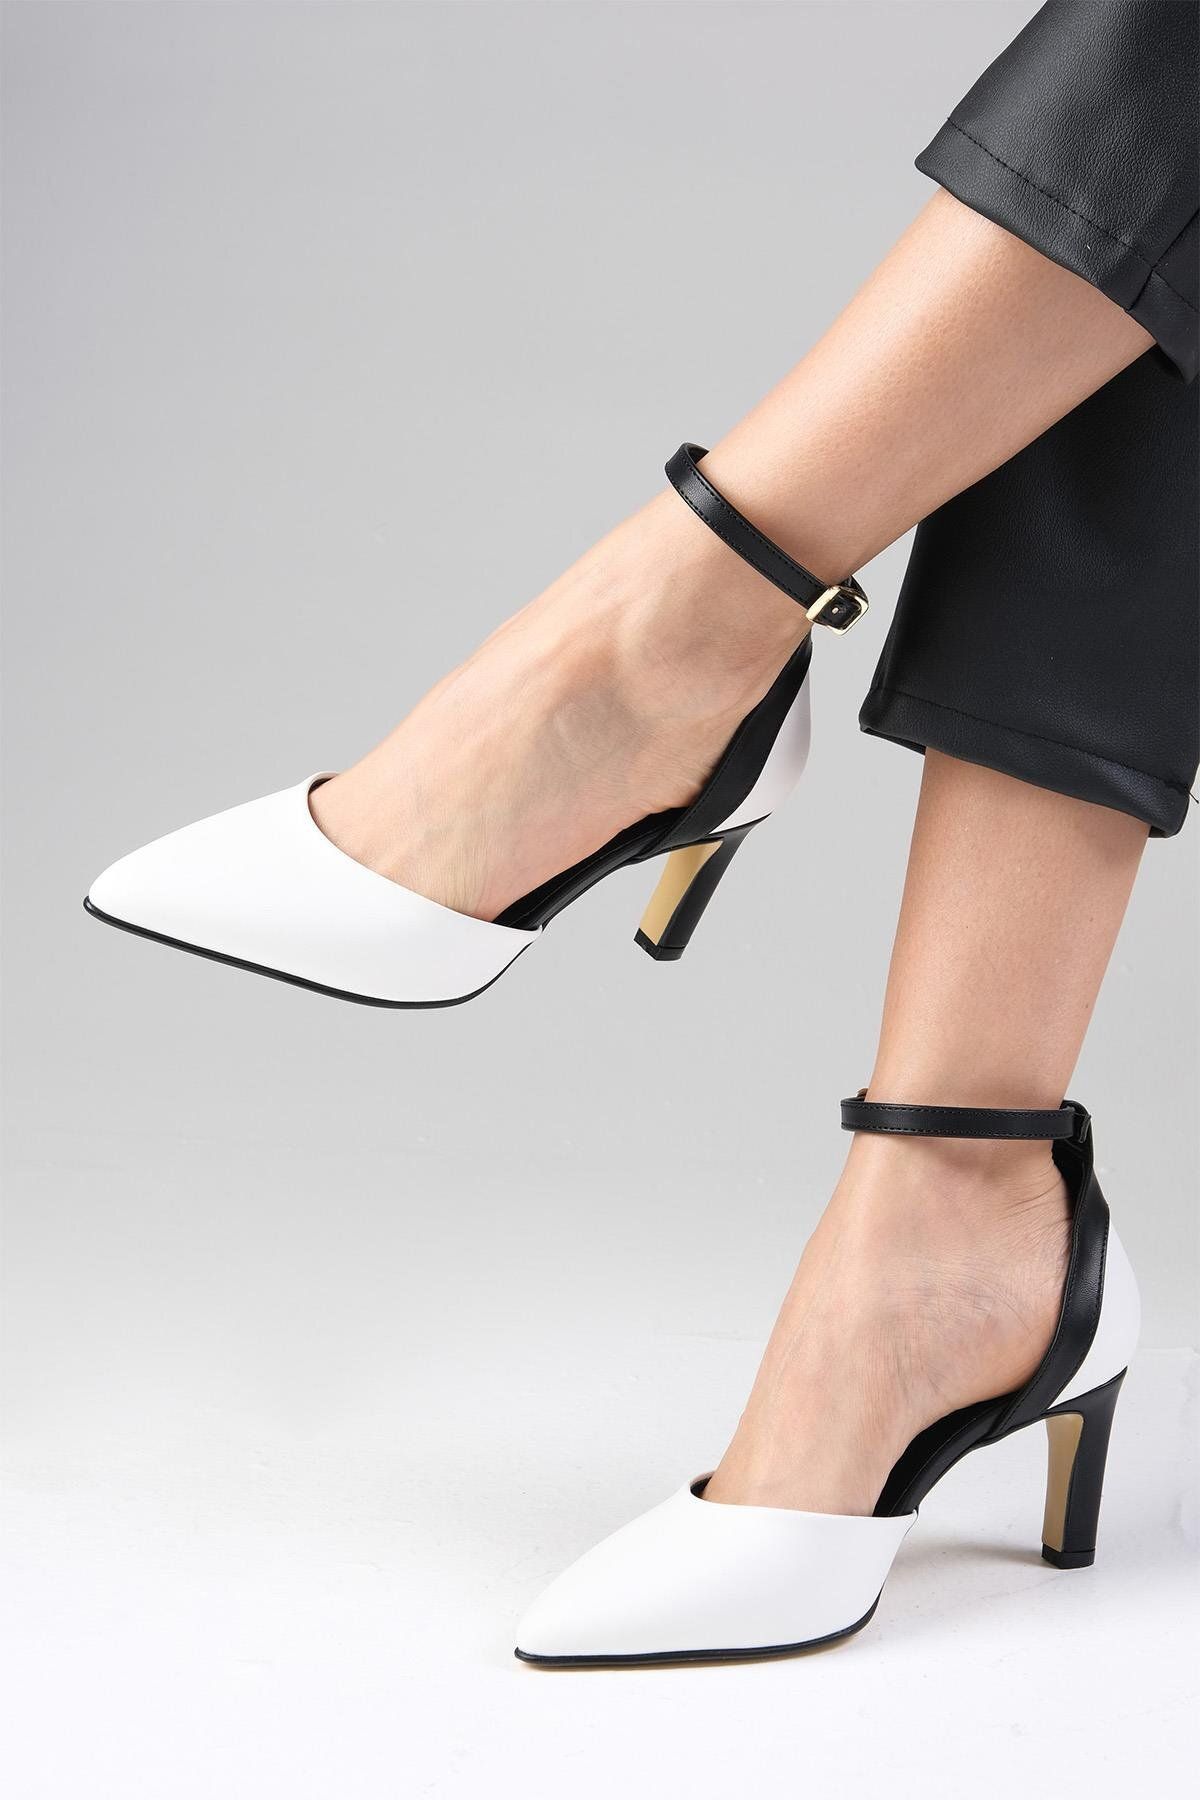 Mio Gusto Luna Beyaz Renk Bilek Bantlı Topuklu Kadın Ayakkabı